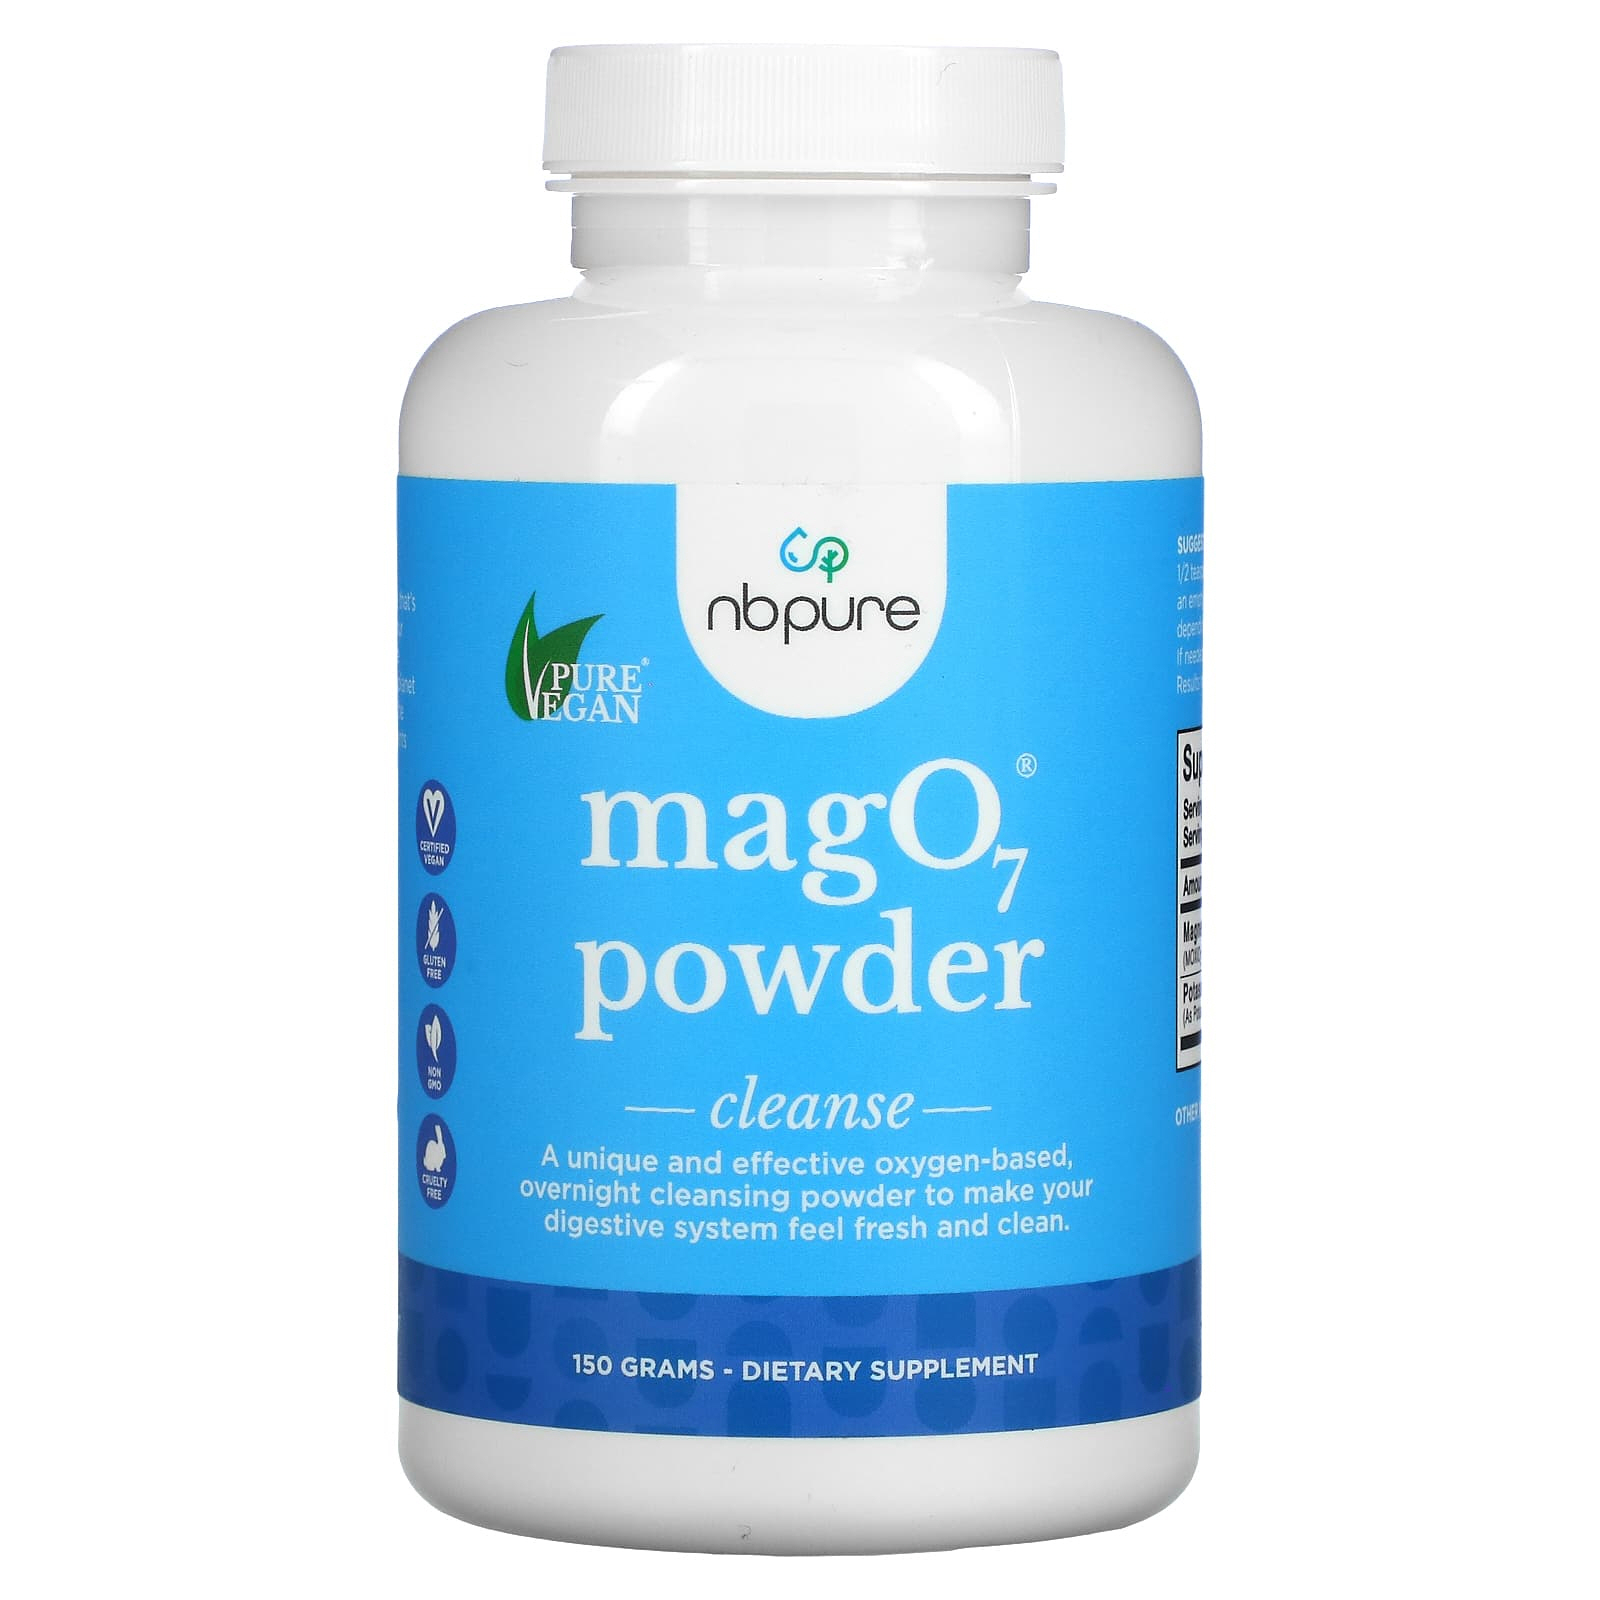 마그네슘 <b>MagO7 Powder</b> Cleanse 150 g